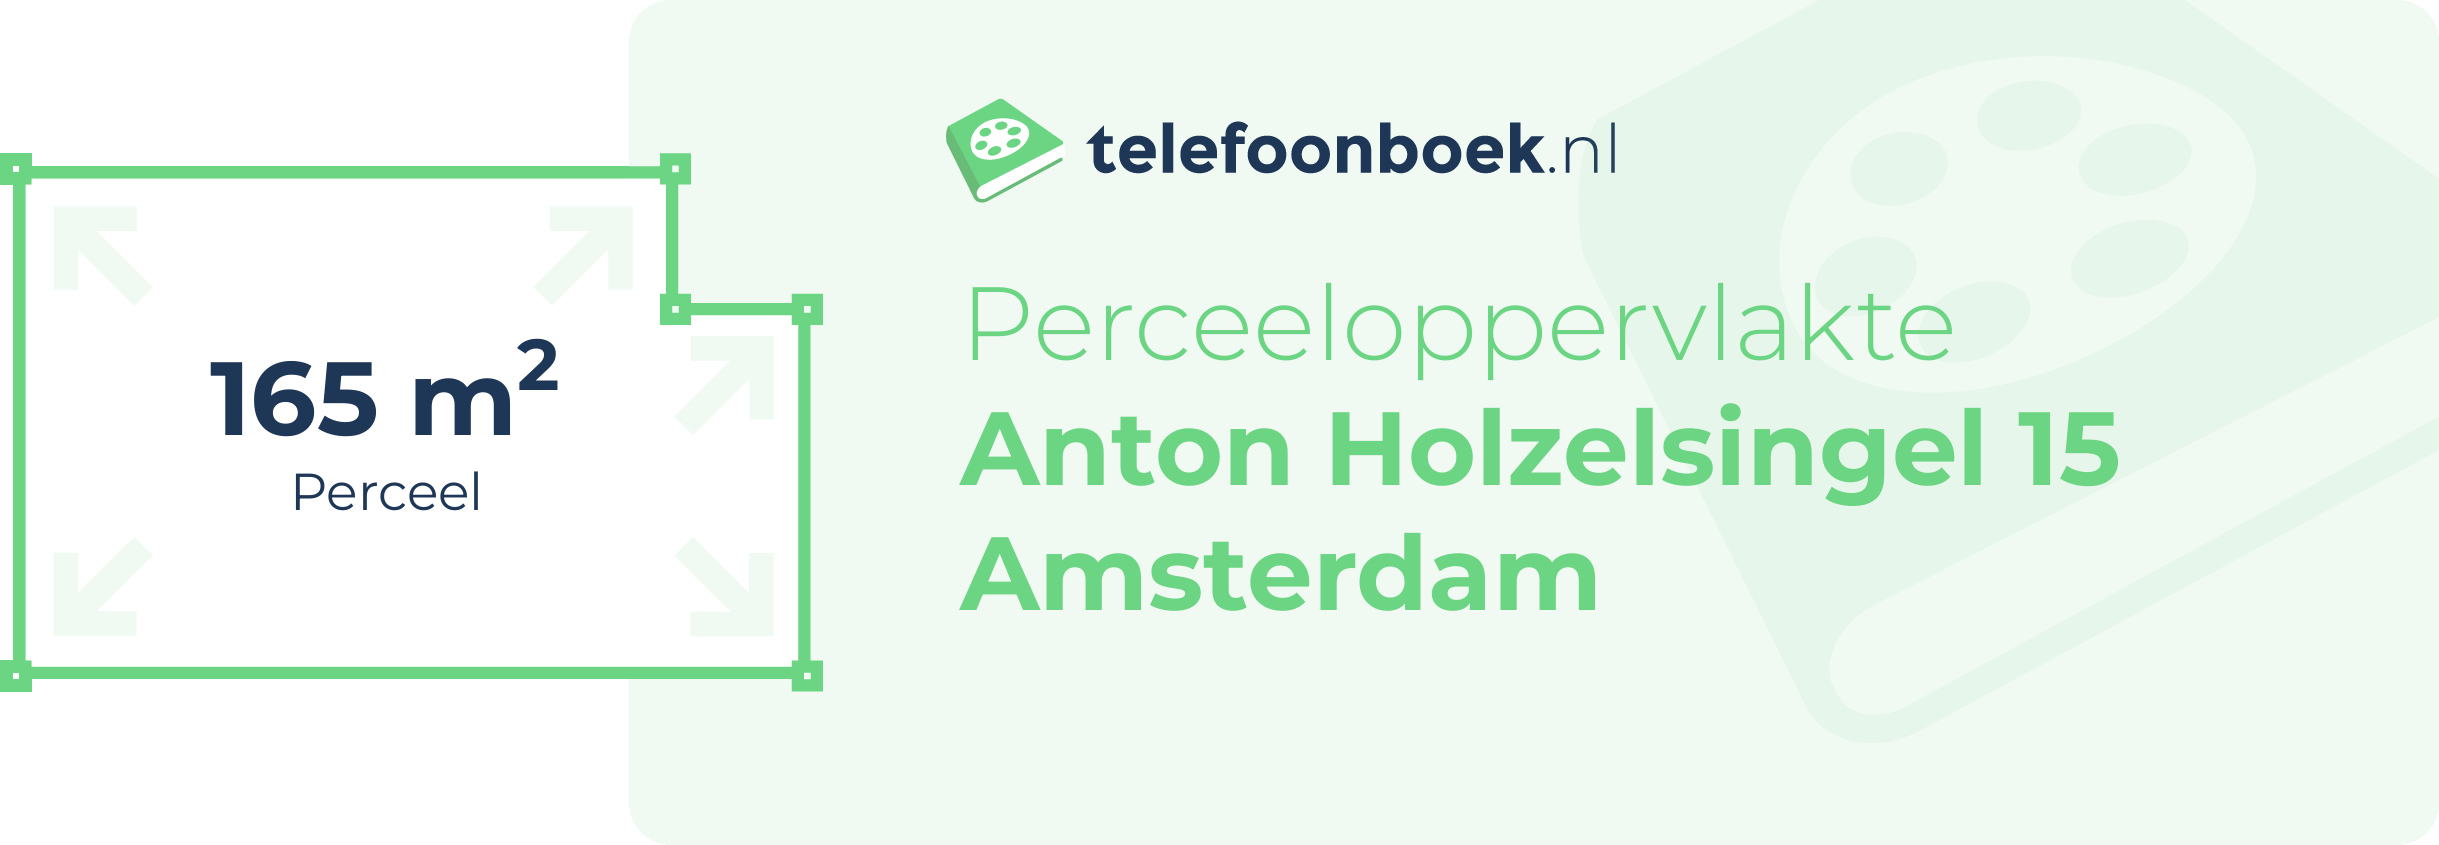 Perceeloppervlakte Anton Holzelsingel 15 Amsterdam